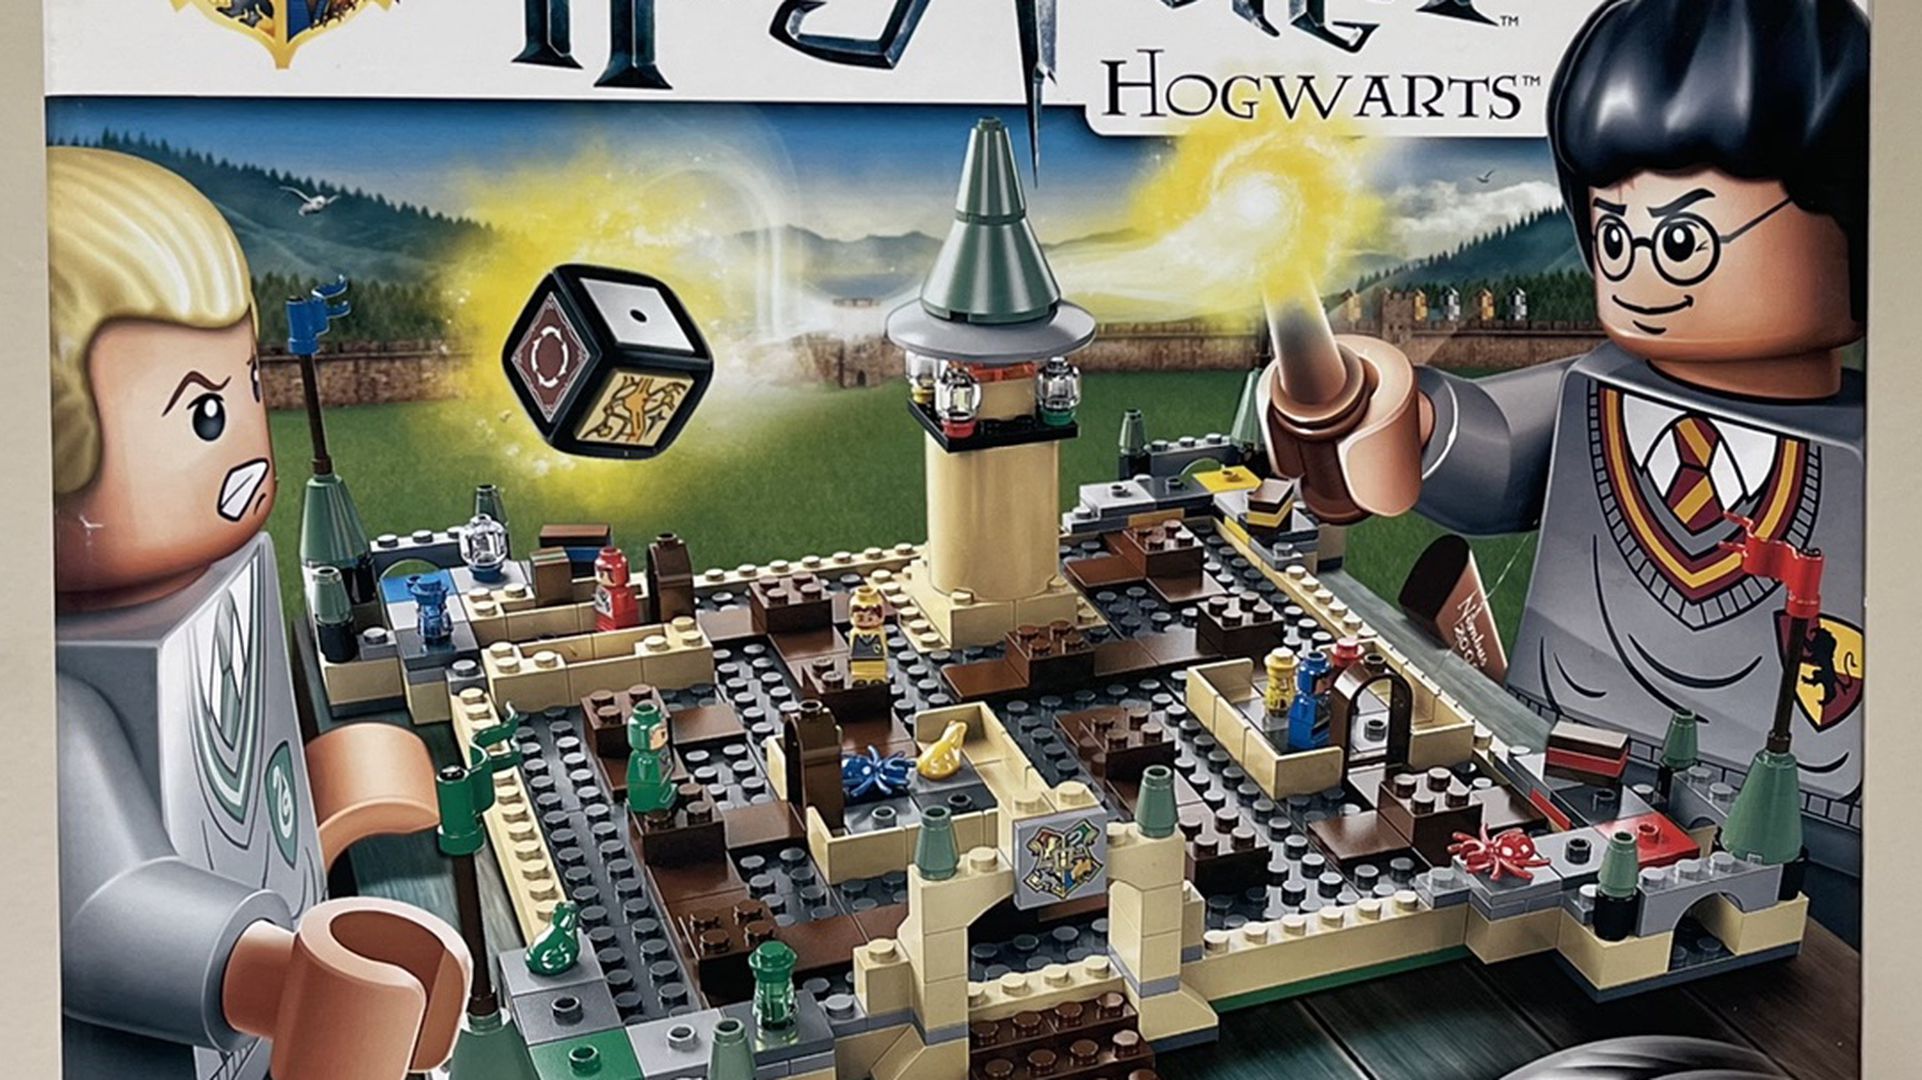 Lego Harry Potter Hog warts Game